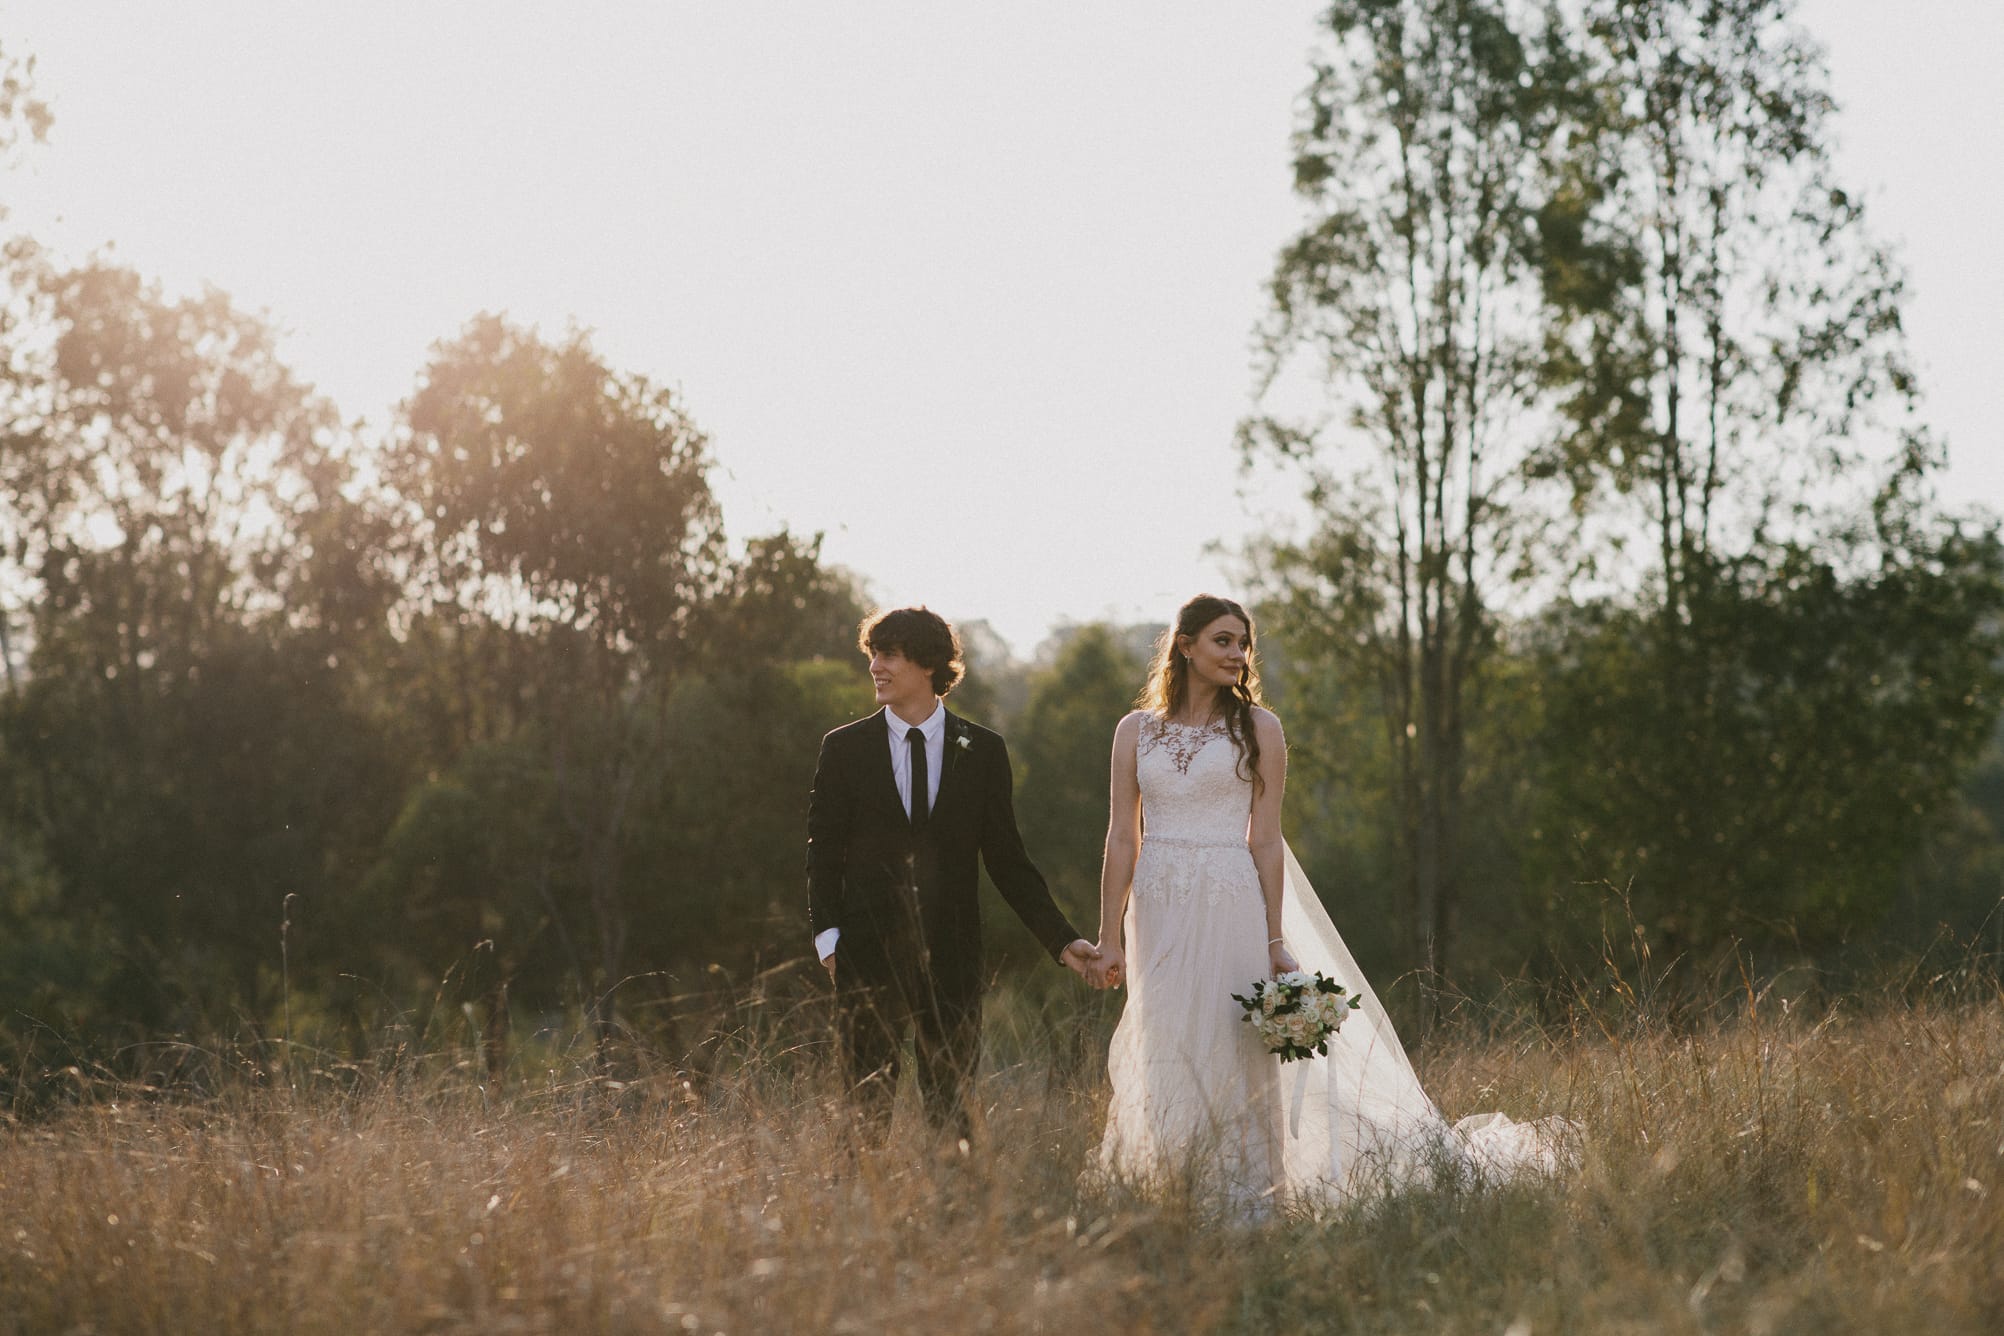 Boonah wedding photographer | Alison Cooke Photography